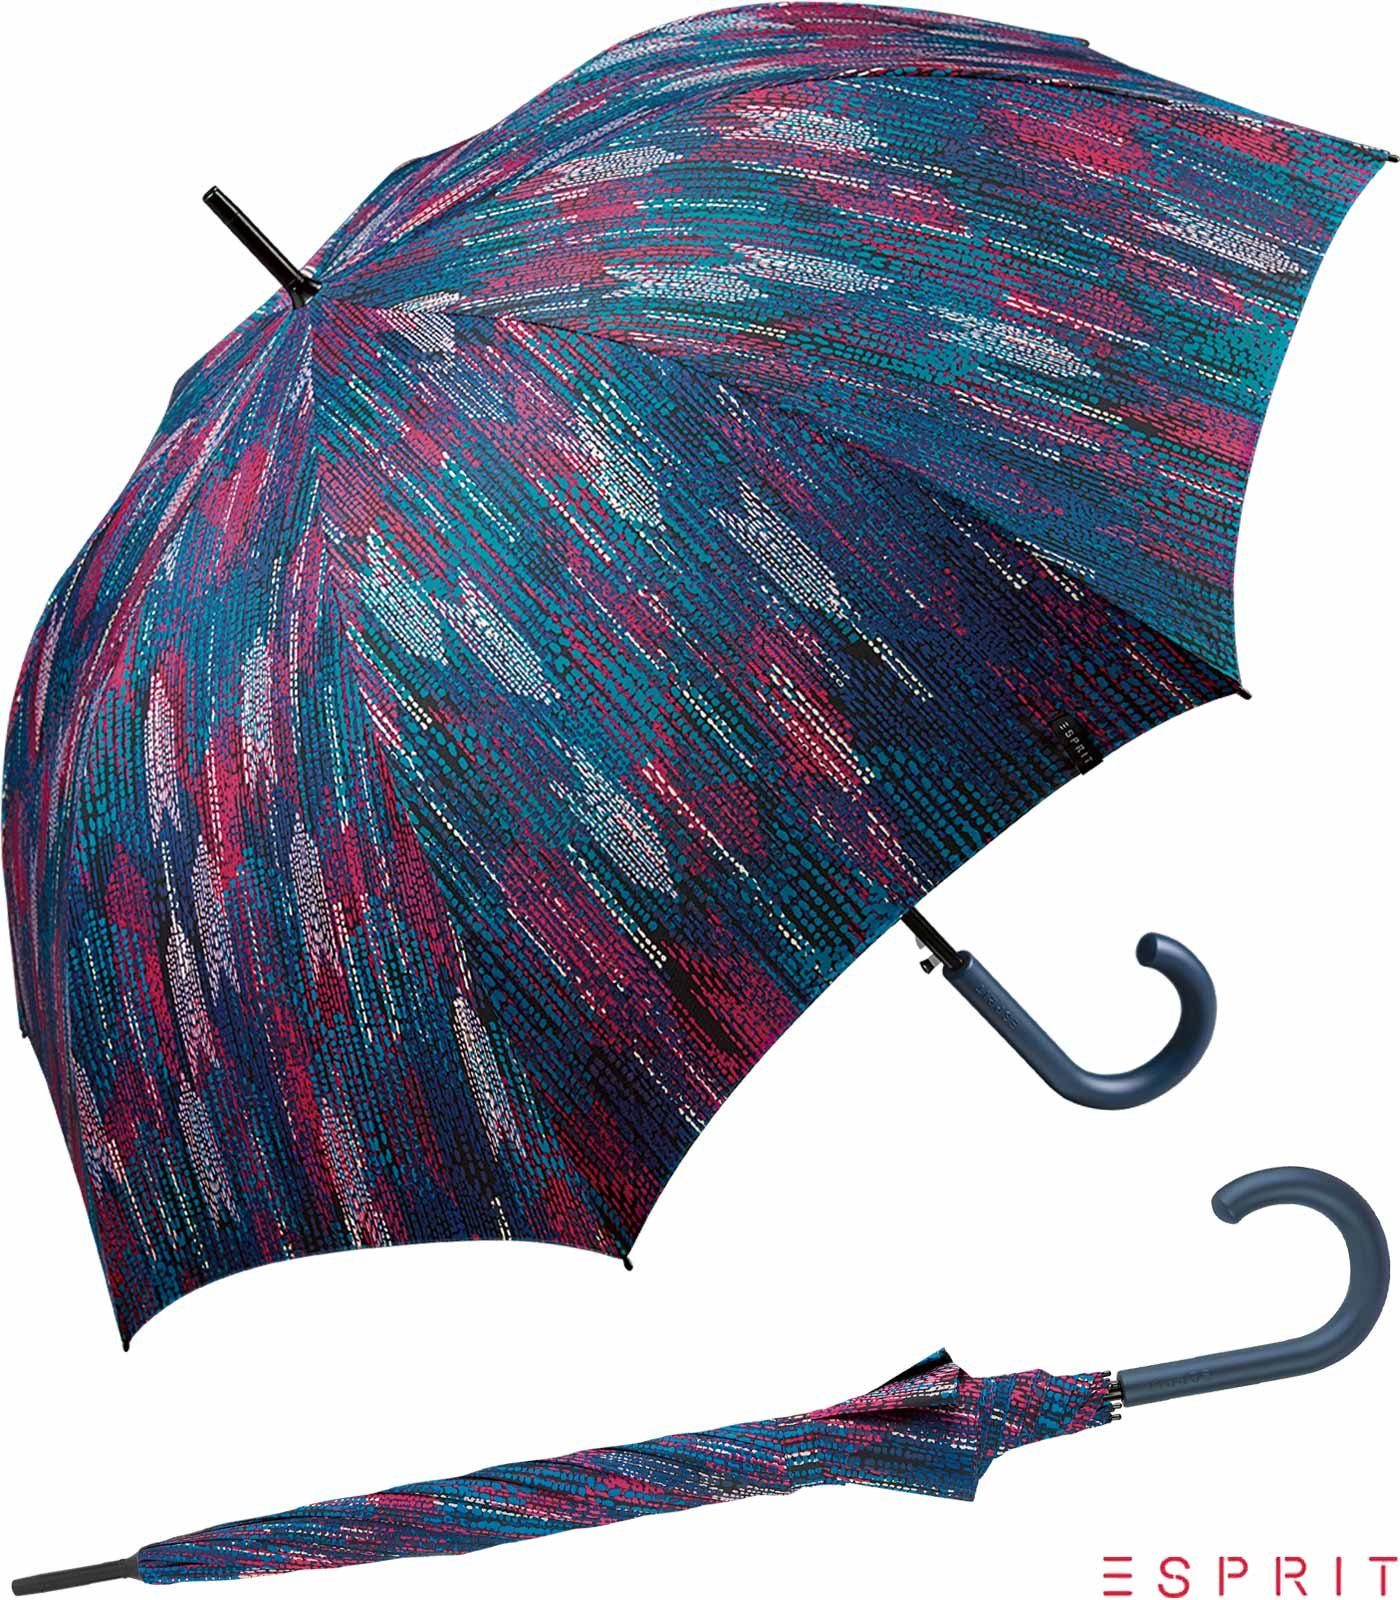 Esprit Langregenschirm Damen mit in verwaschener Auf-Automatik - - Blurred Optik depths, stabil, Edges groß, bunter blau ocean